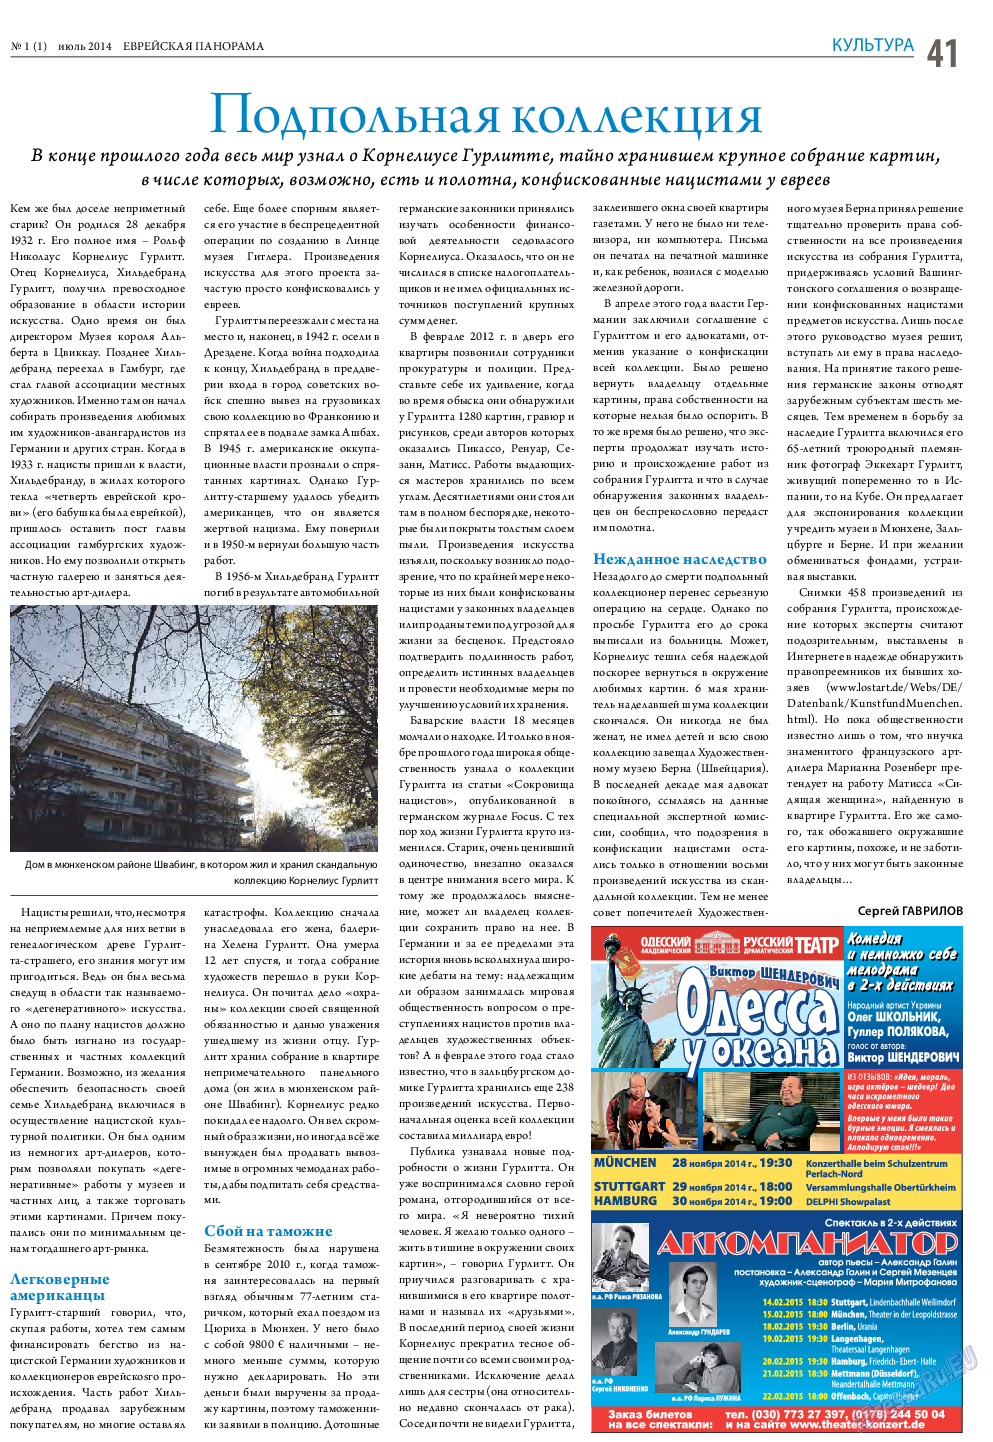 Еврейская панорама (газета). 2014 год, номер 1, стр. 41